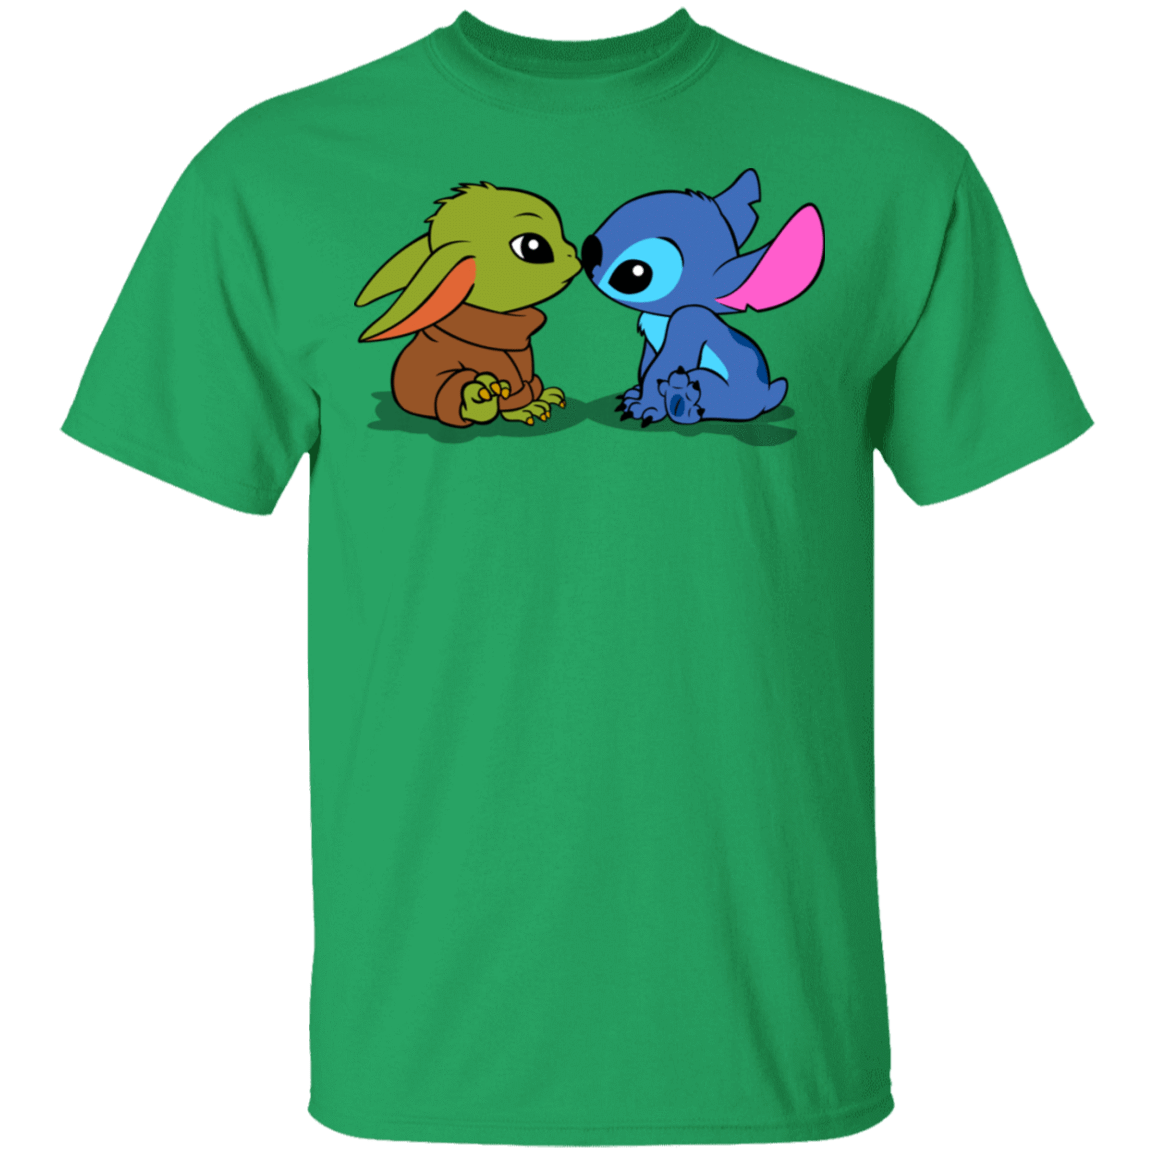 T-Shirts Irish Green / S Stitch Yoda Baby T-Shirt